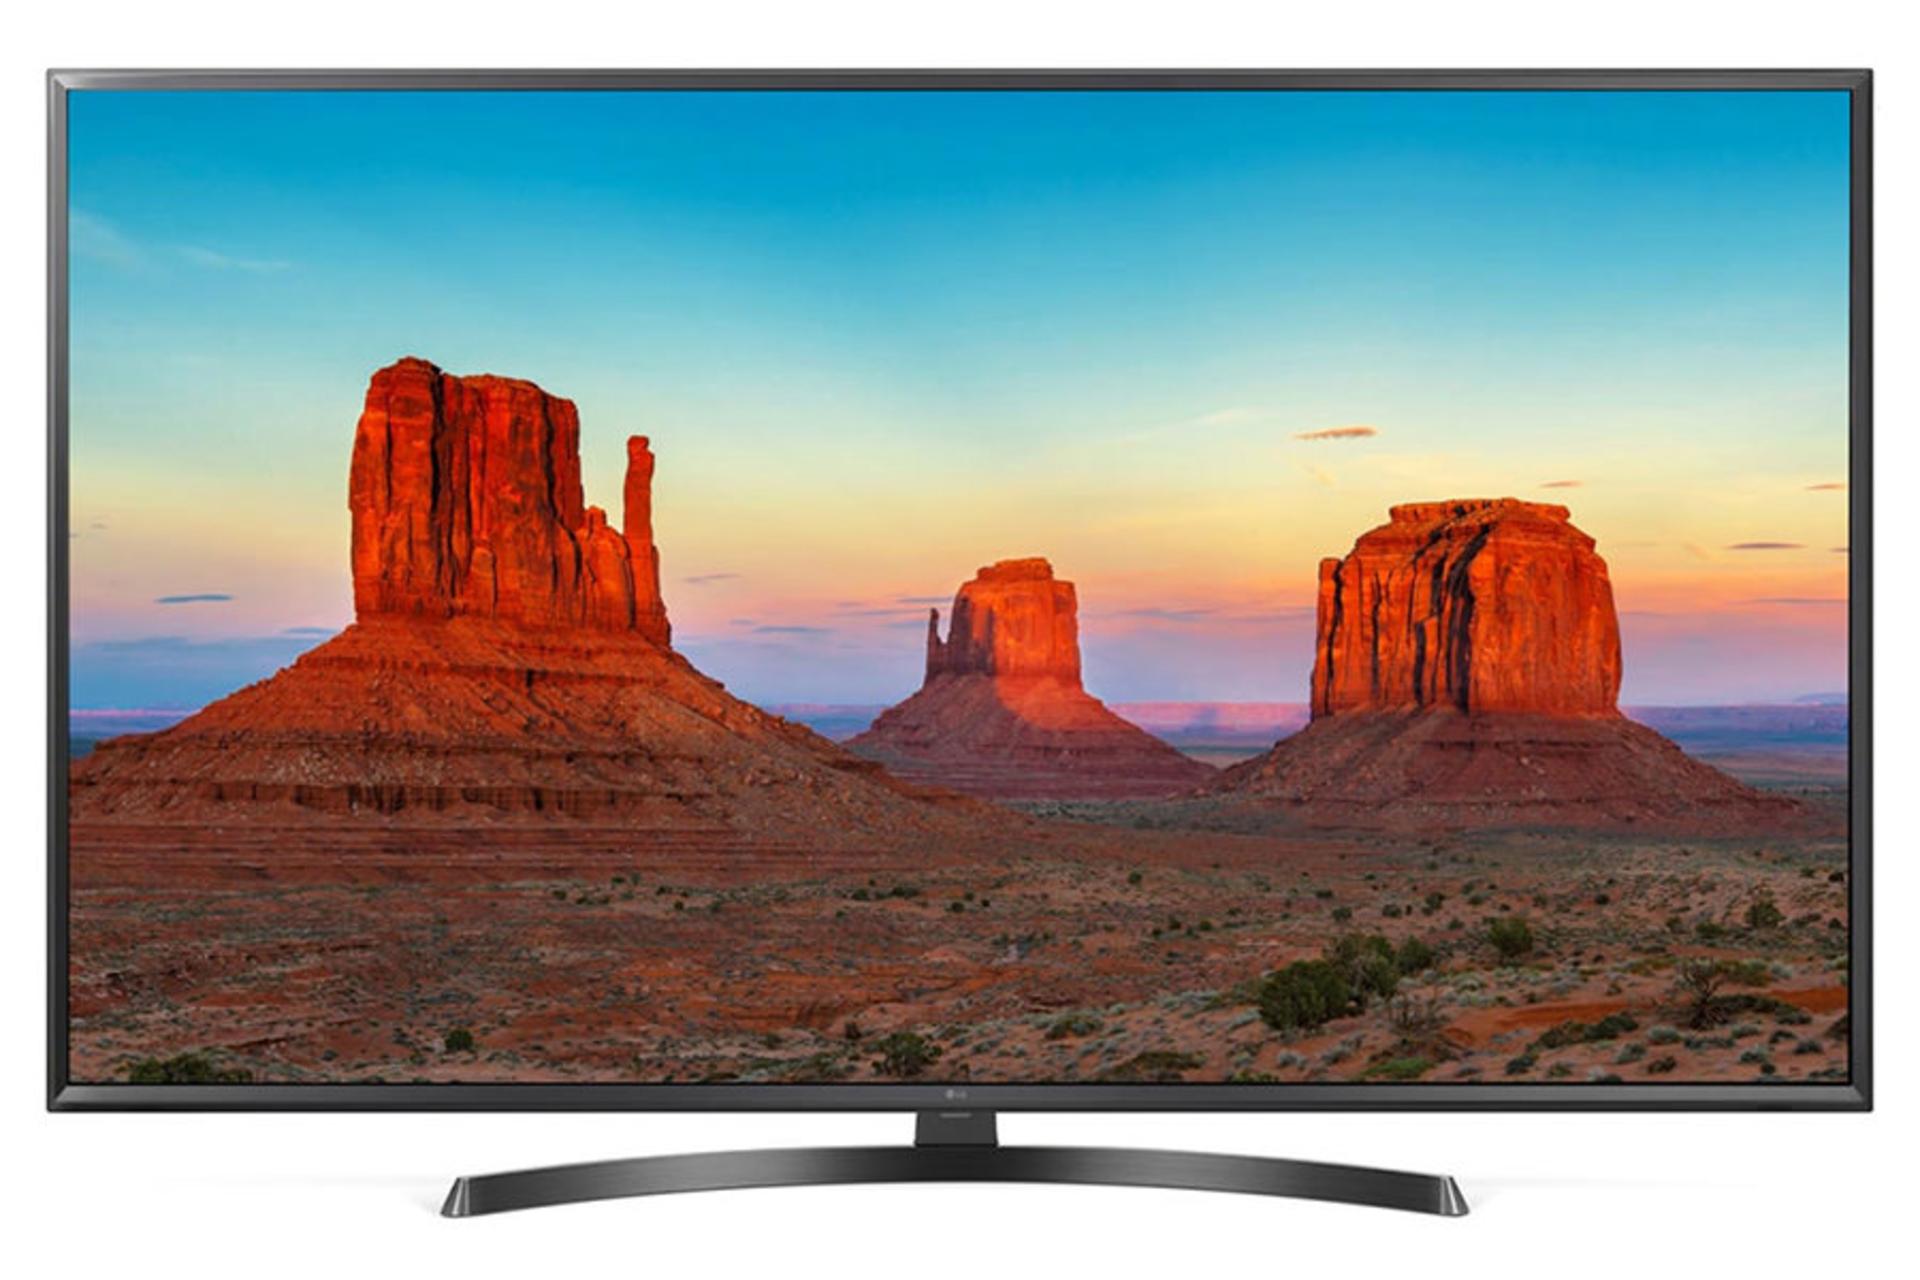 نمای جلو تلویزیون ال جی UK6400 مدل 49 اینچ با صفحه روشن